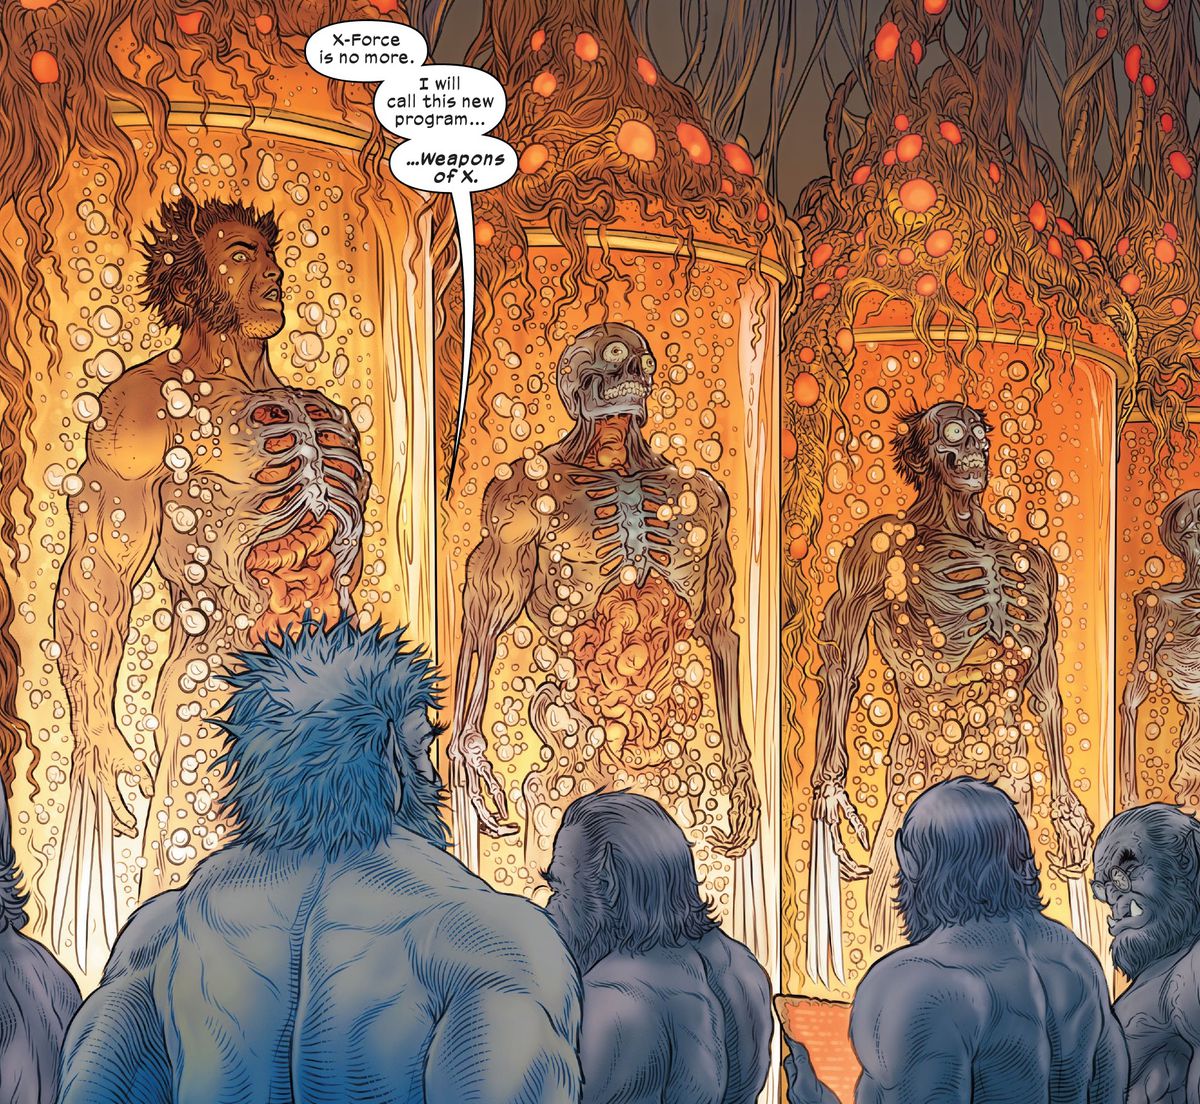 “X-Force ไม่ใช่อีกต่อไปแล้ว” บีสต์พูดกับร่างโคลนของบีสต์อีกสี่ตัวที่ดูแลถังโคลนวูลเวอรีนที่กำลังเติบโตหลายถัง “ฉันจะเรียกโปรแกรมใหม่นี้ว่า... Weapons of X” ใน Wolverine #31 (2023)